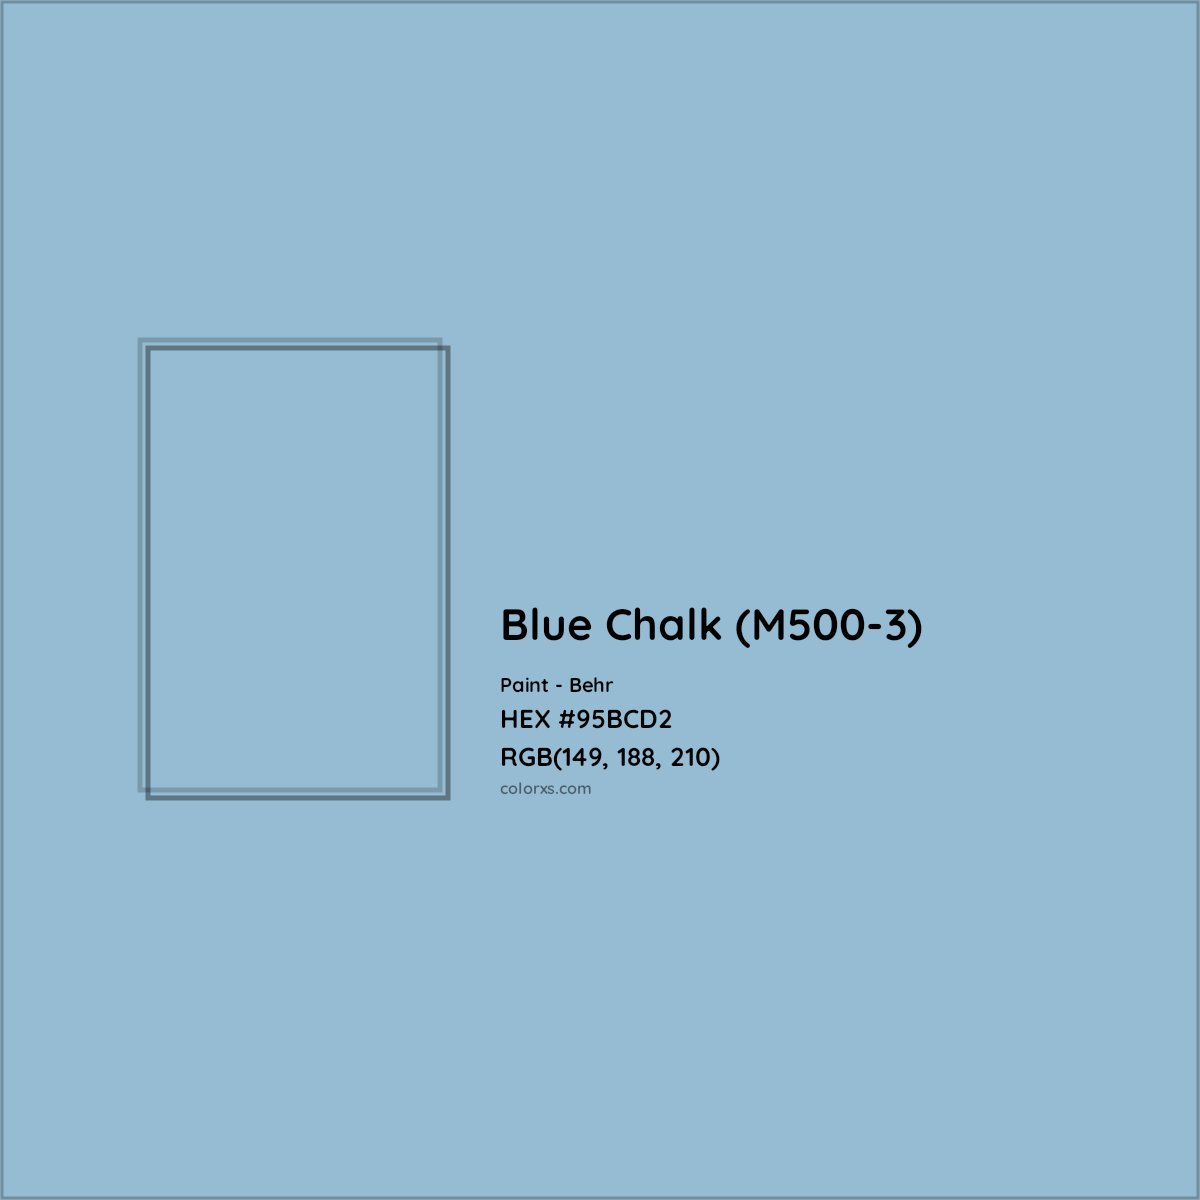 HEX #95BCD2 Blue Chalk (M500-3) Paint Behr - Color Code